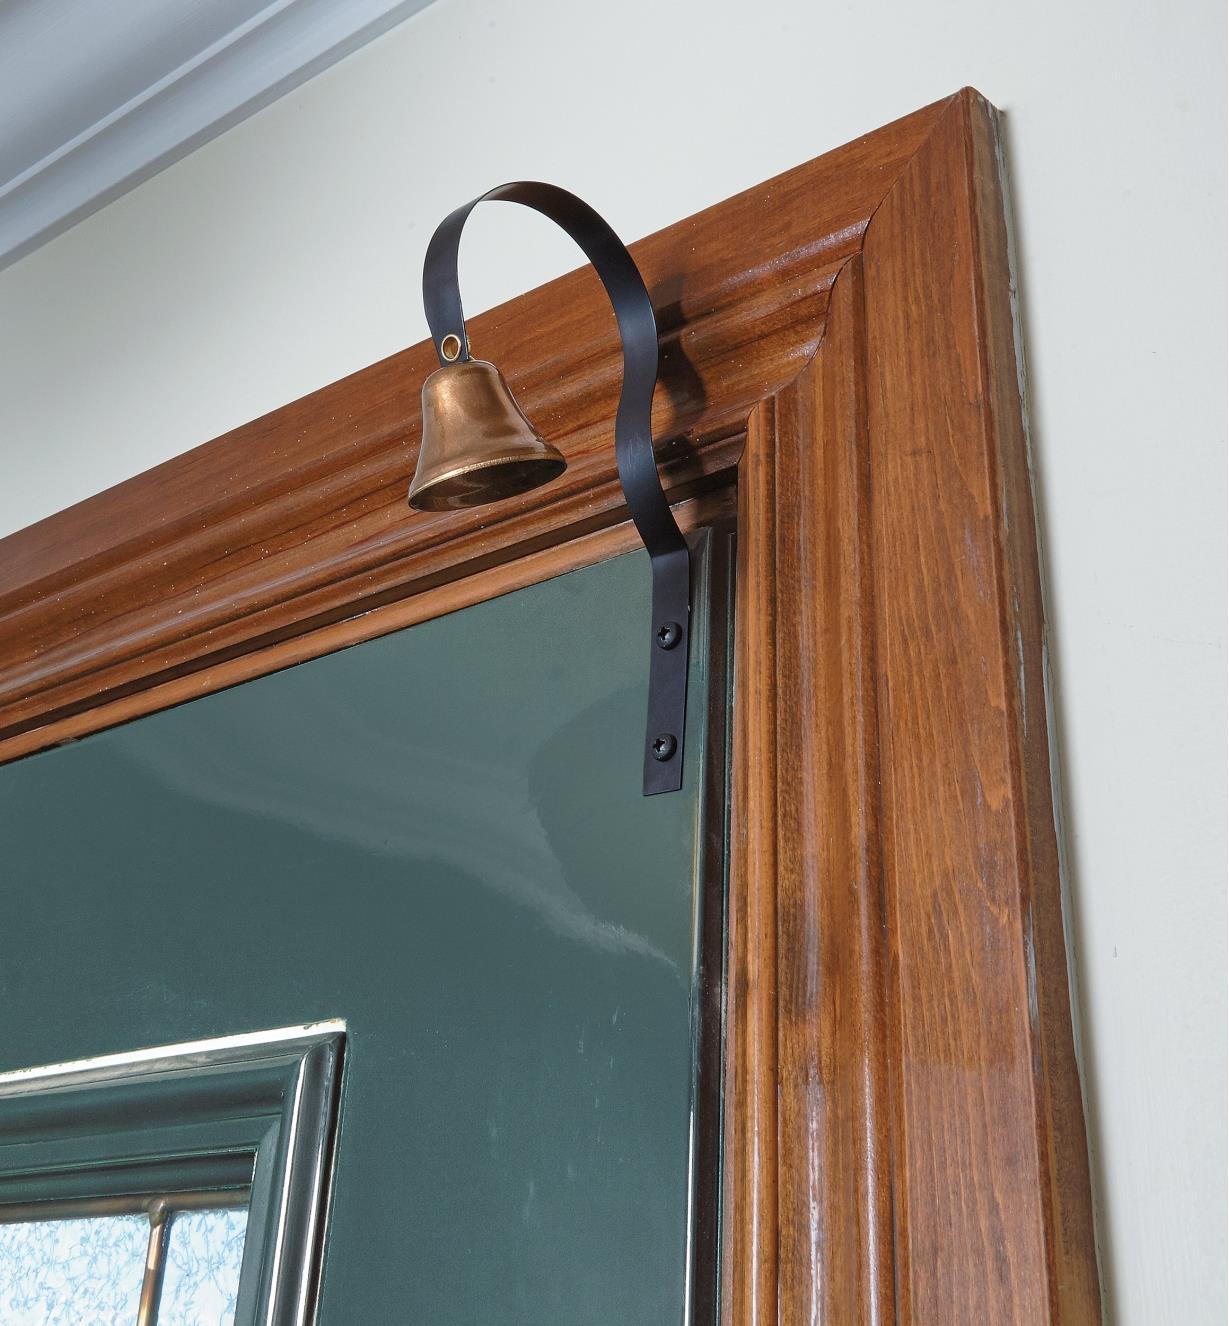 Brass Shopkeeper's Bell mounted above a door